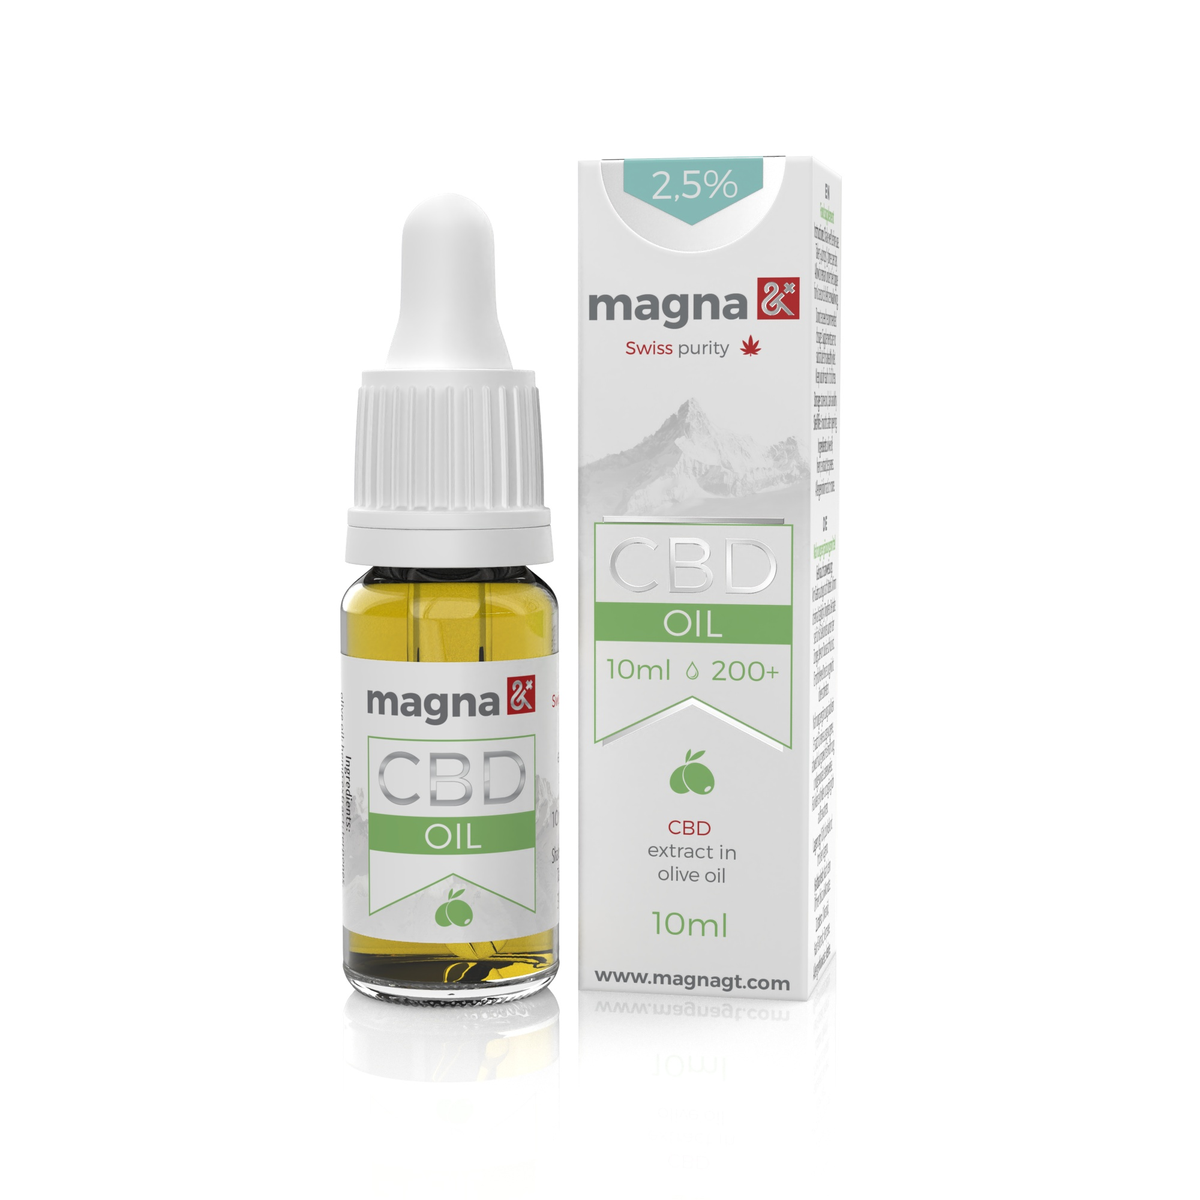 Magna G&amp;T 2.5% CBD Oil 250mg | 10ml | in olive oil